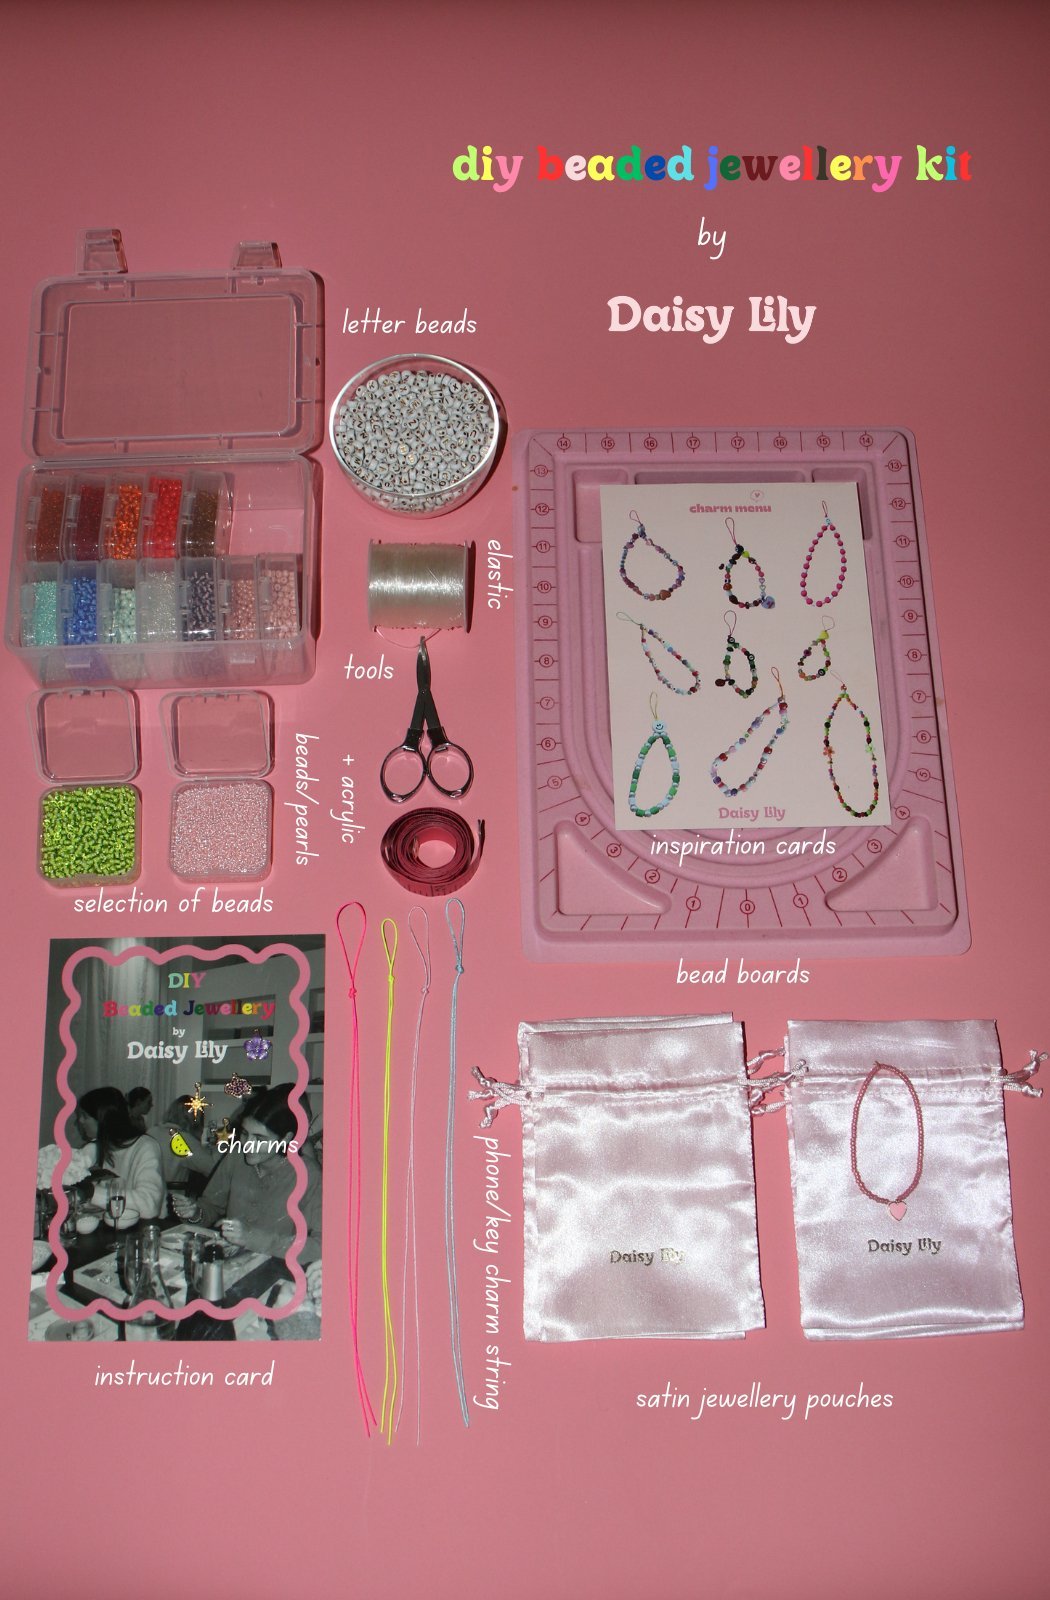 DIY Beading Kit by Daisy Lily - Daisy Lily